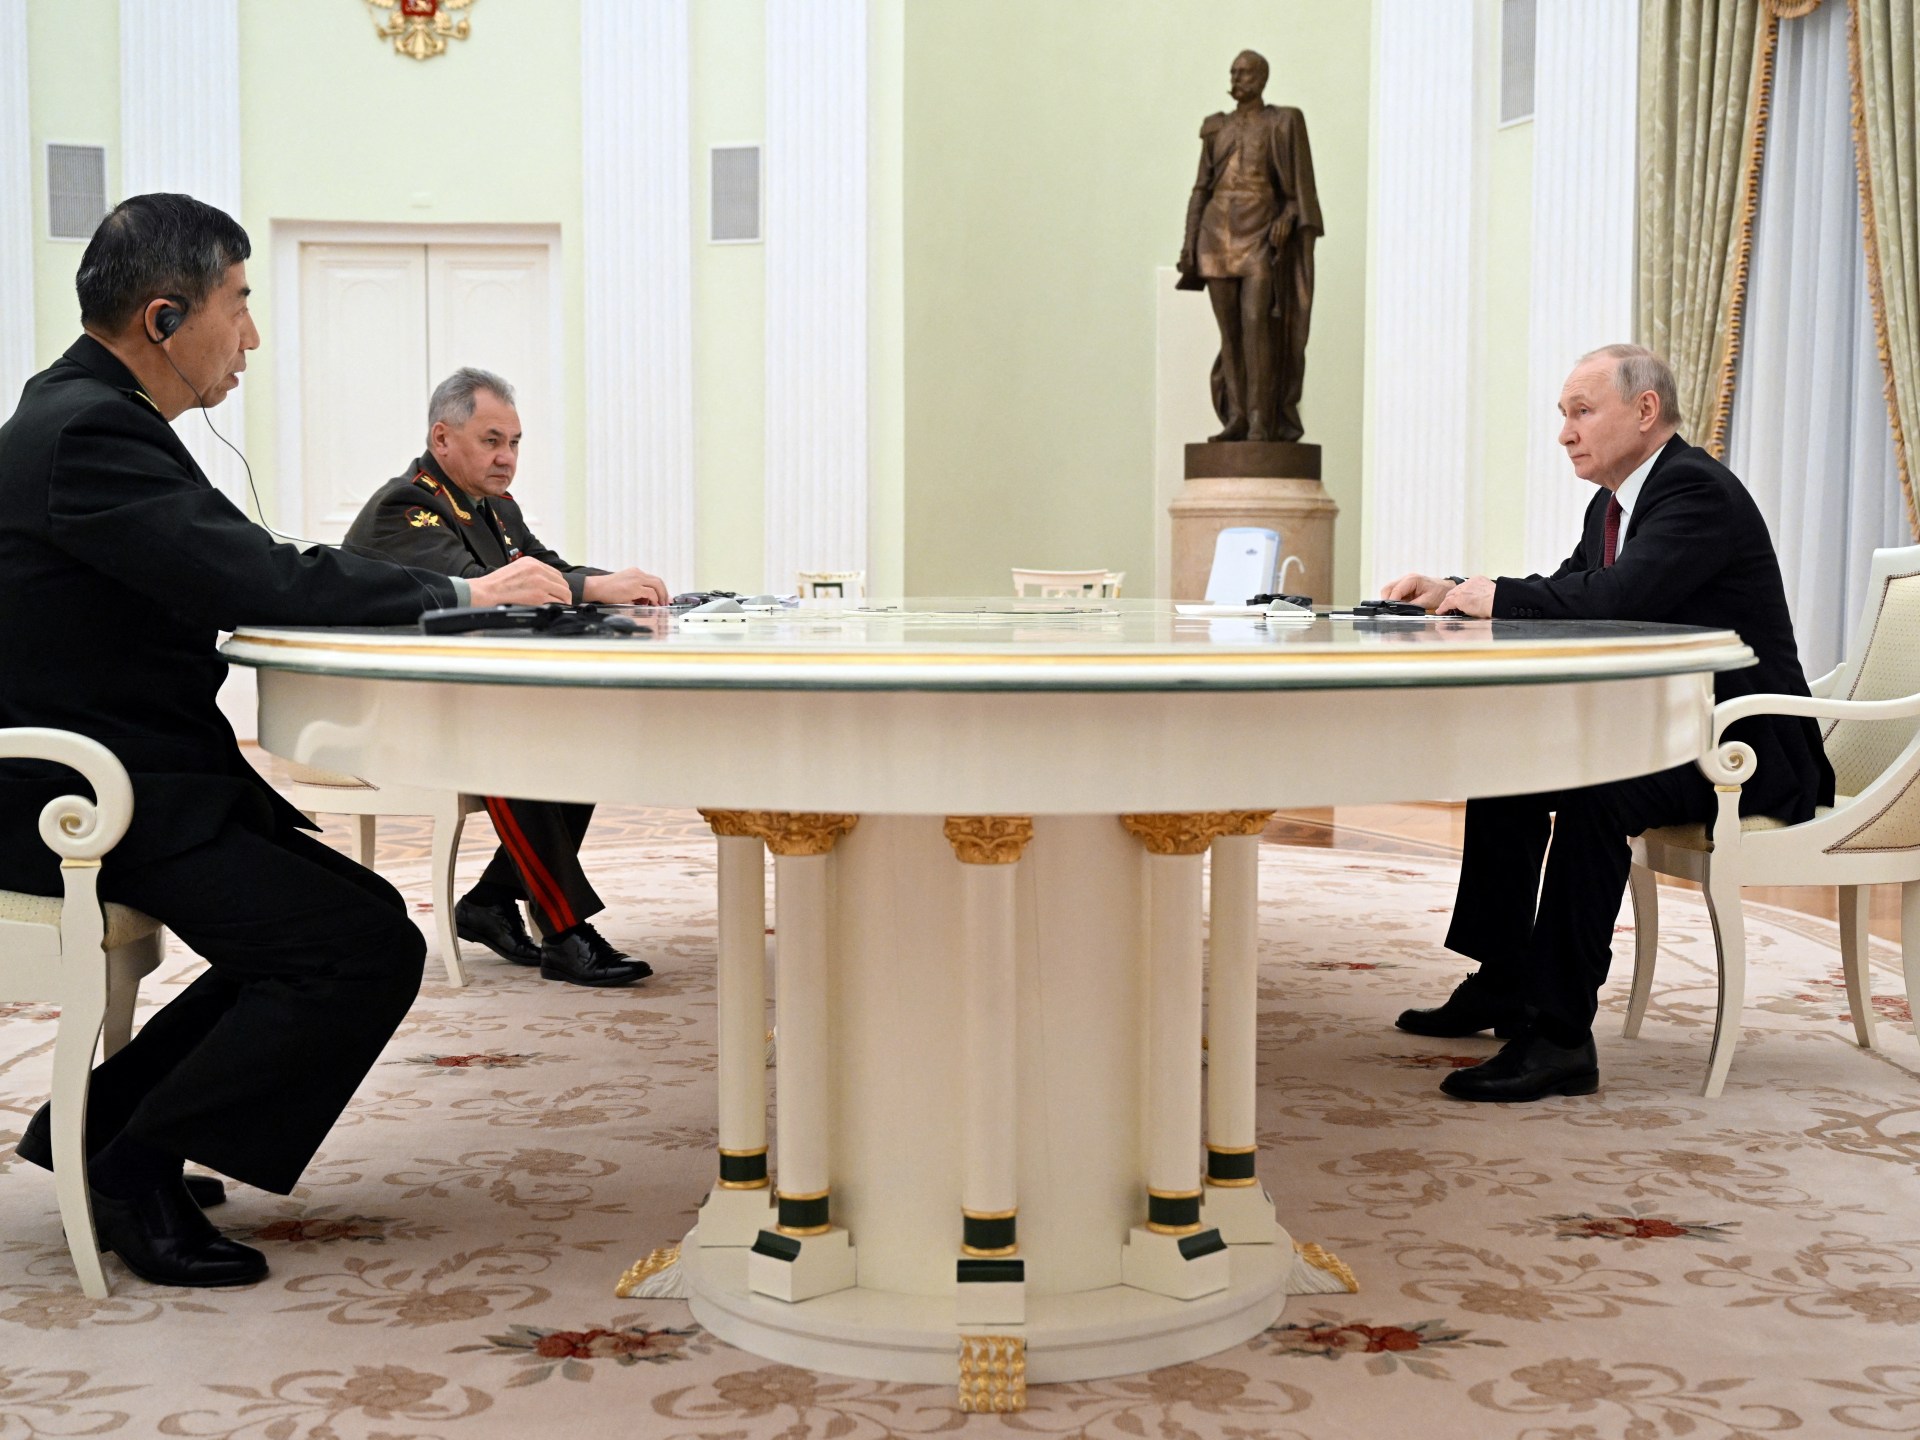 التقى بوتين بوزير الدفاع الصيني في موسكو  الأخبار السياسية